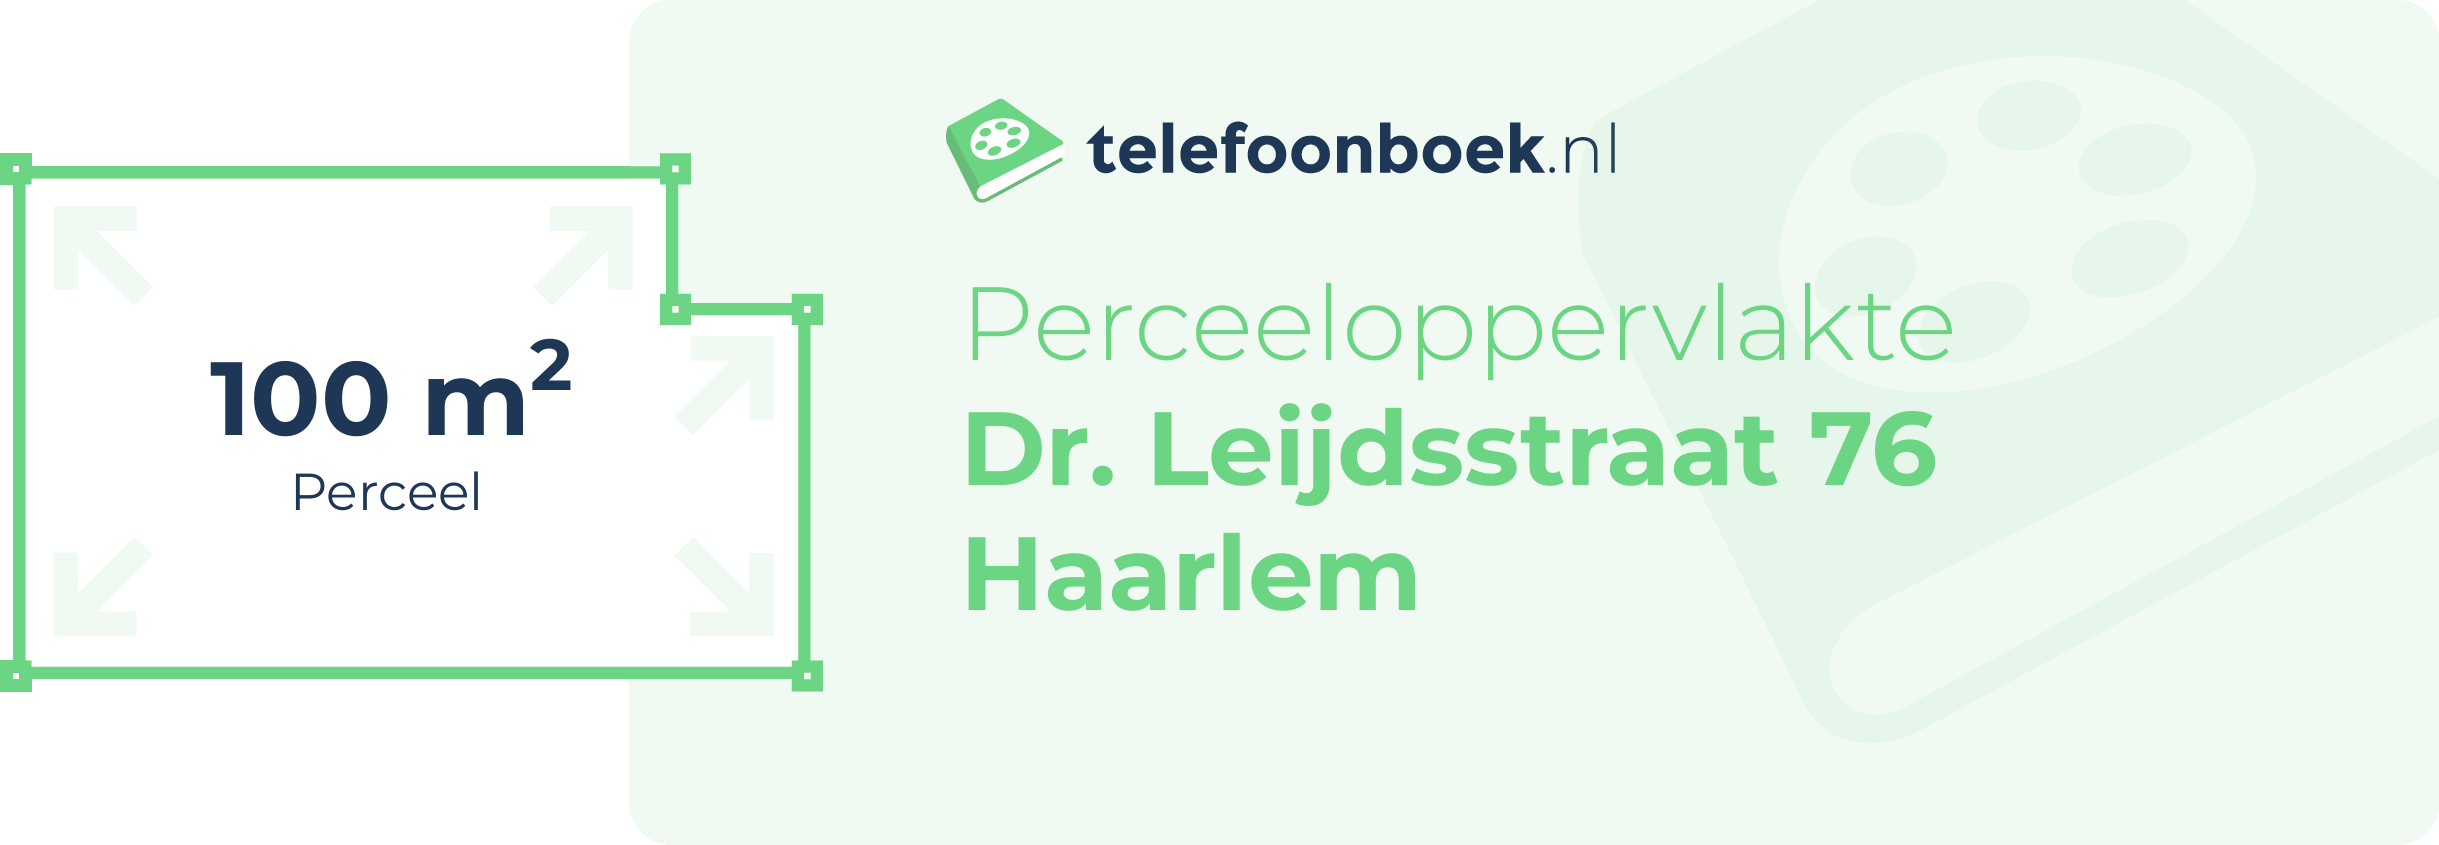 Perceeloppervlakte Dr. Leijdsstraat 76 Haarlem